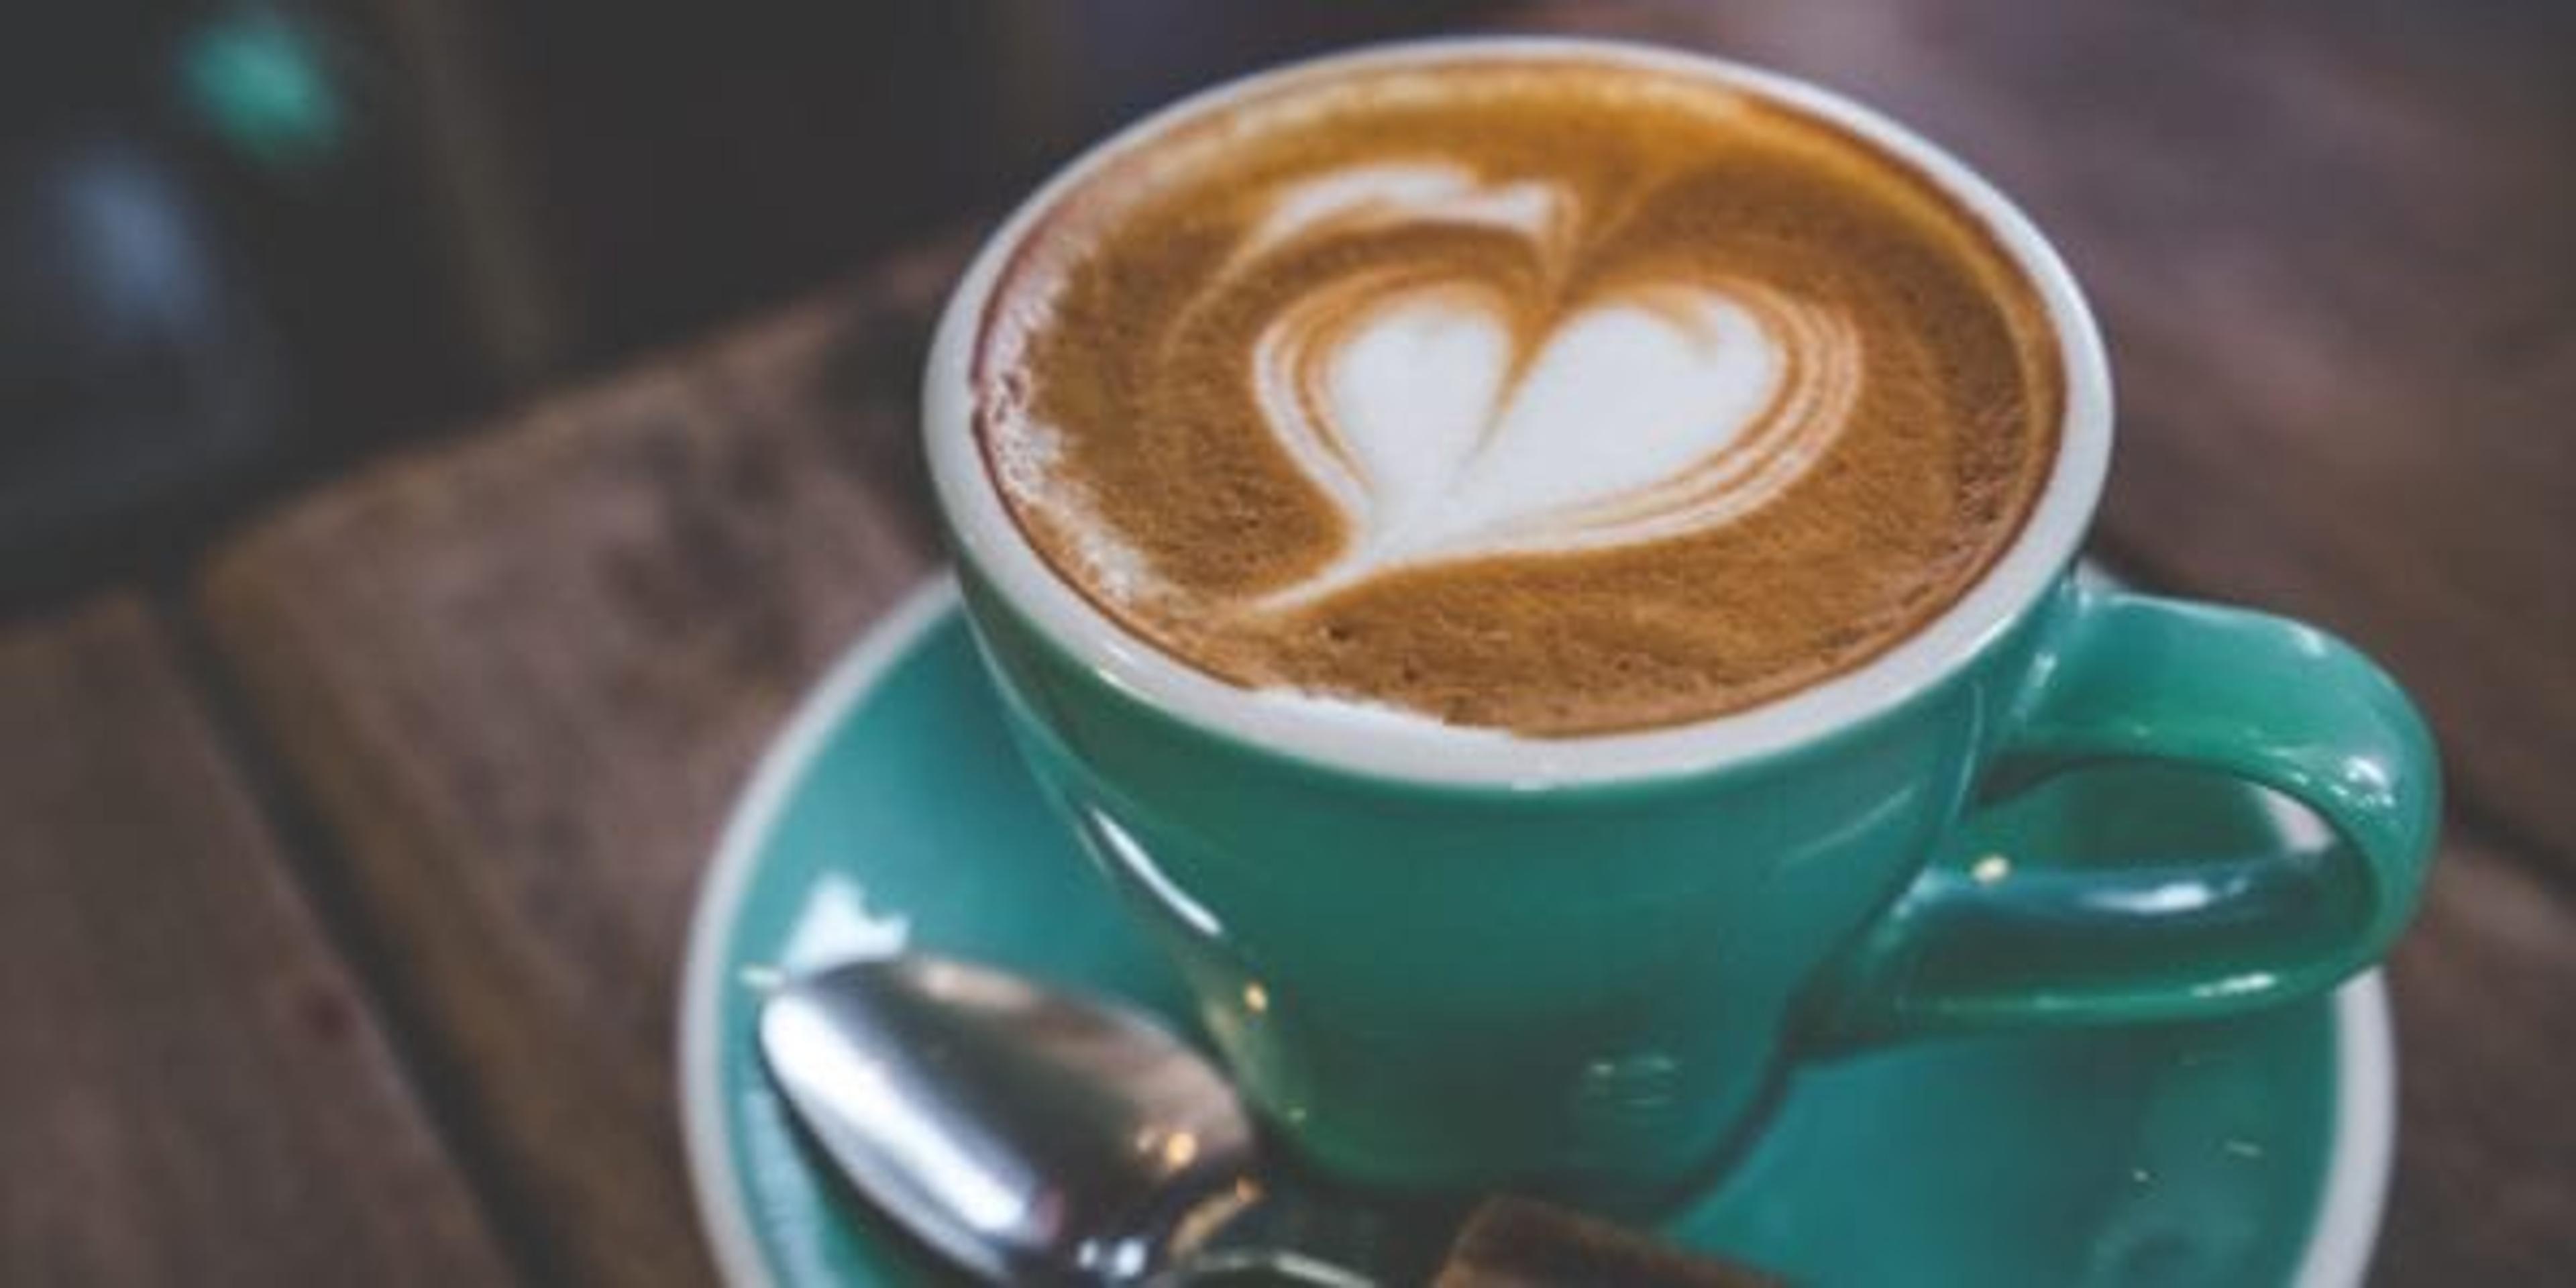 Latte in a mug with heart foam